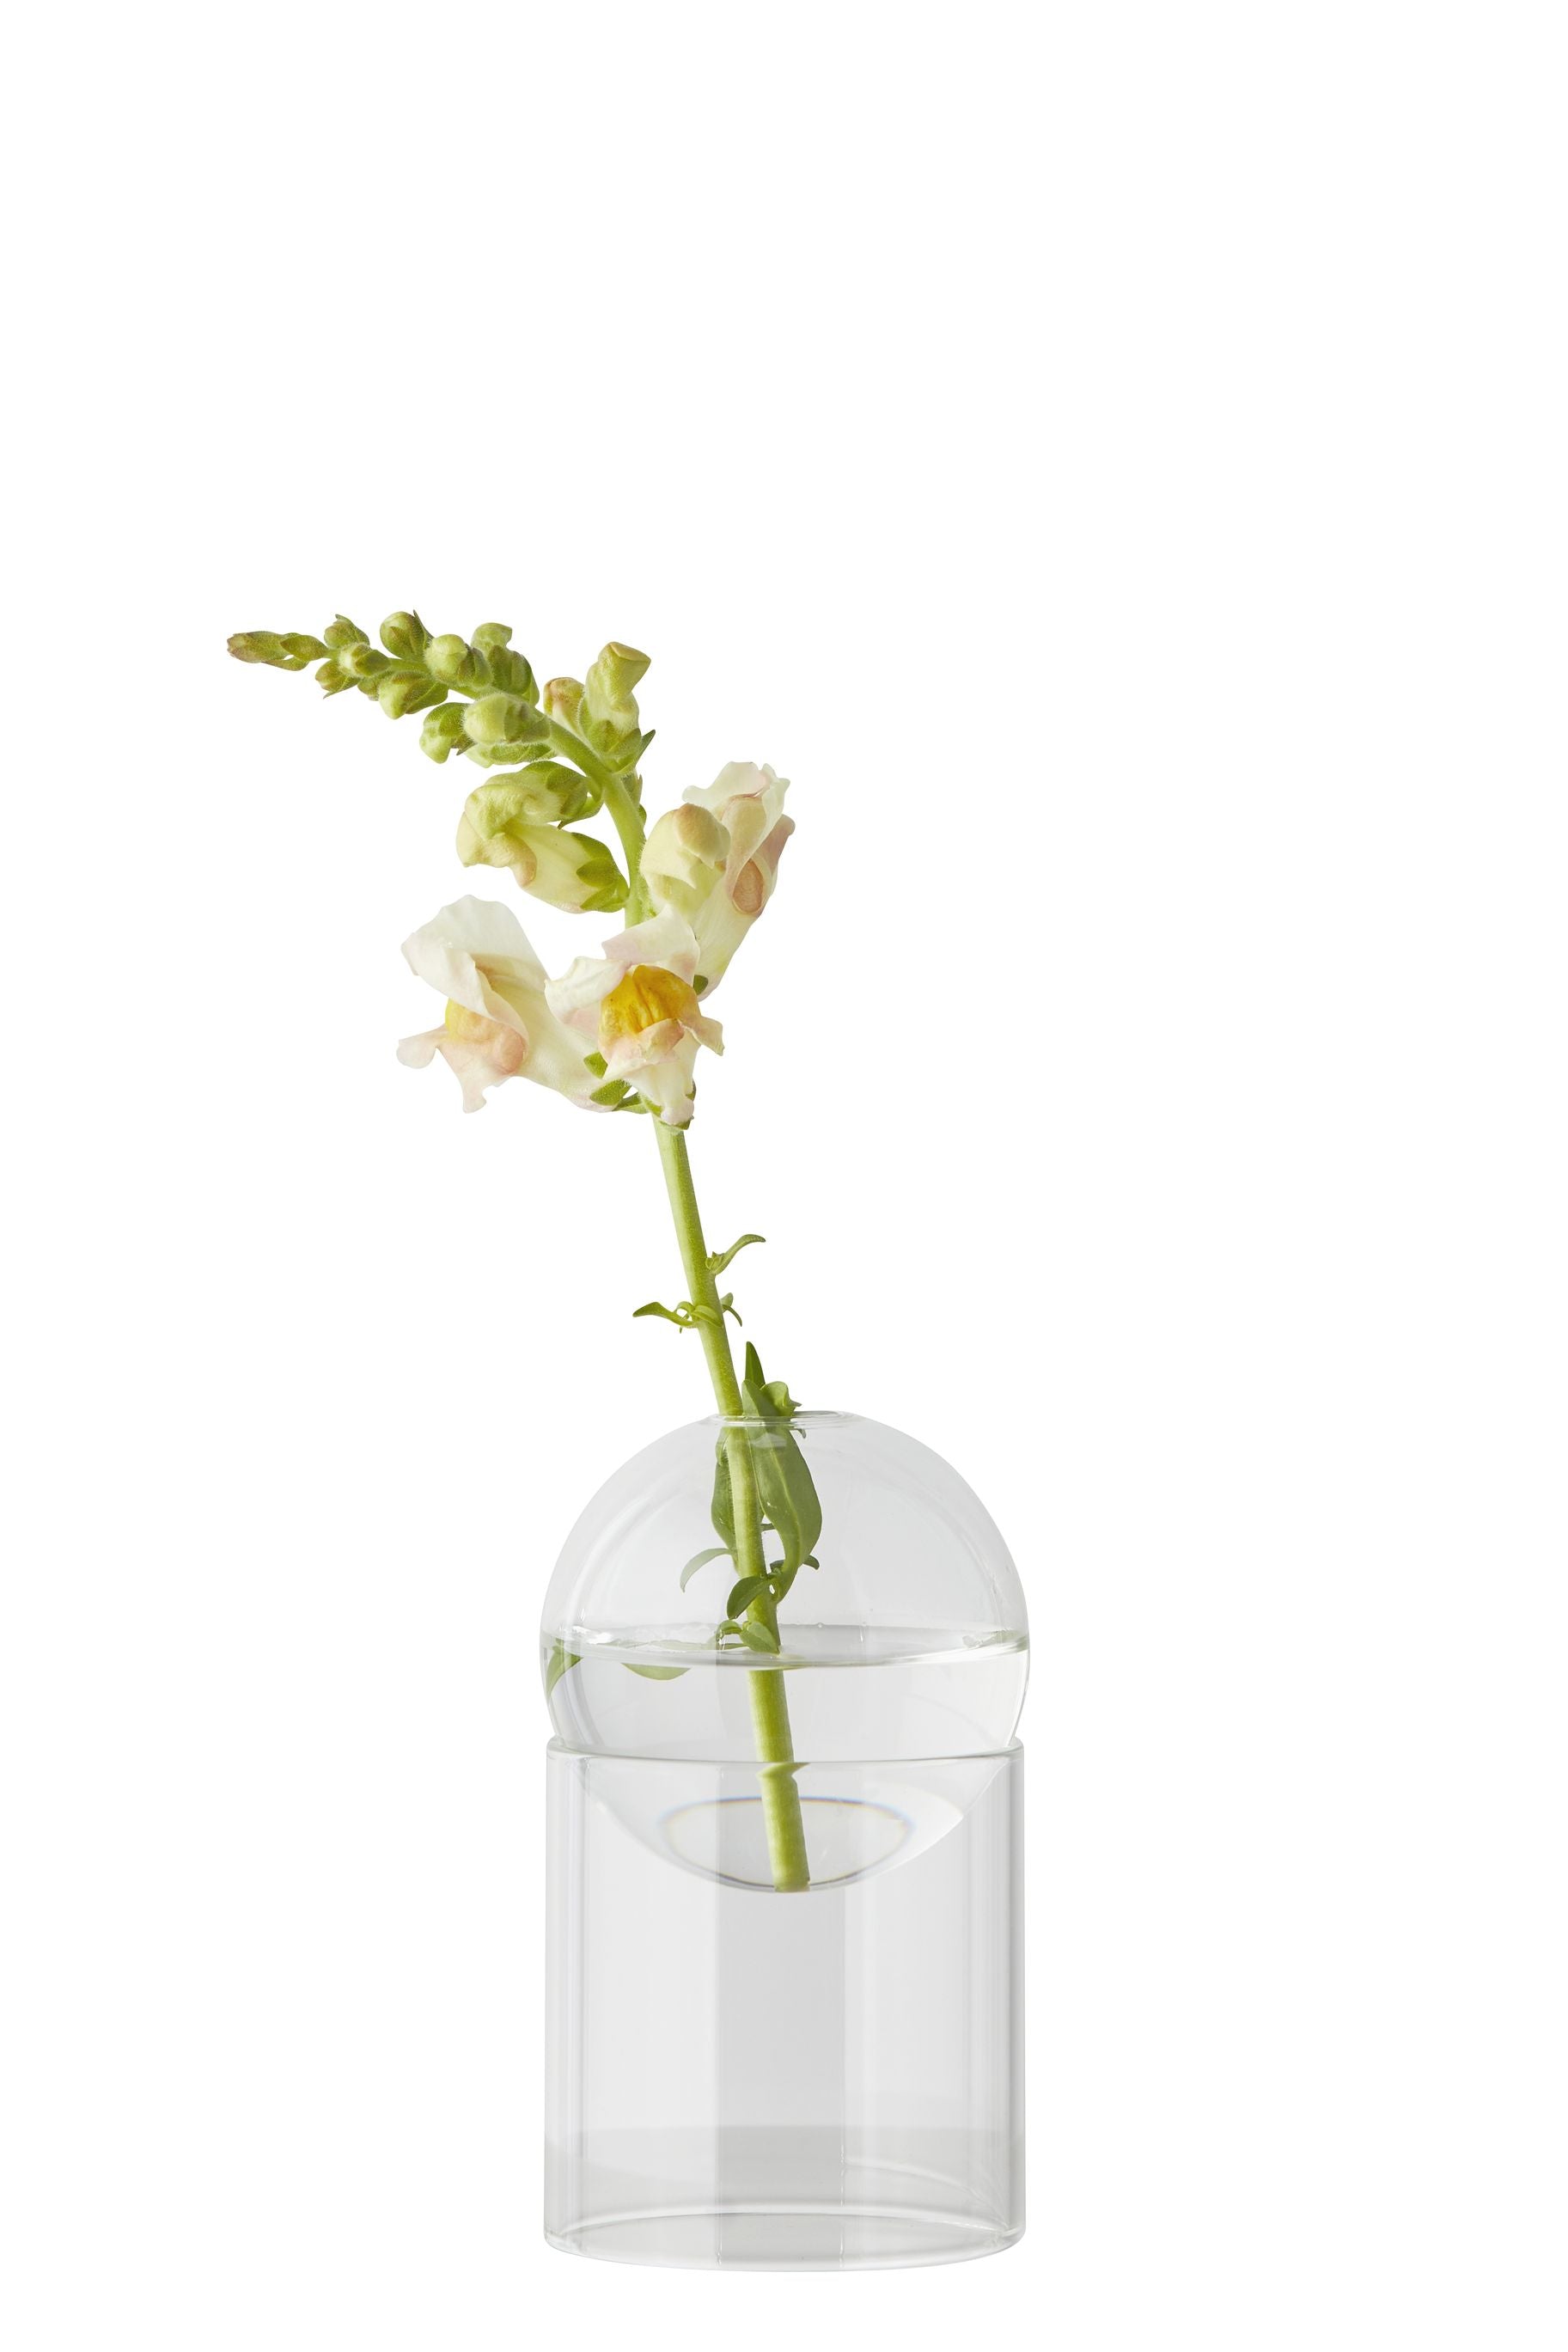 Studio sur le vase de bulles de fleur debout 13 cm, transparent